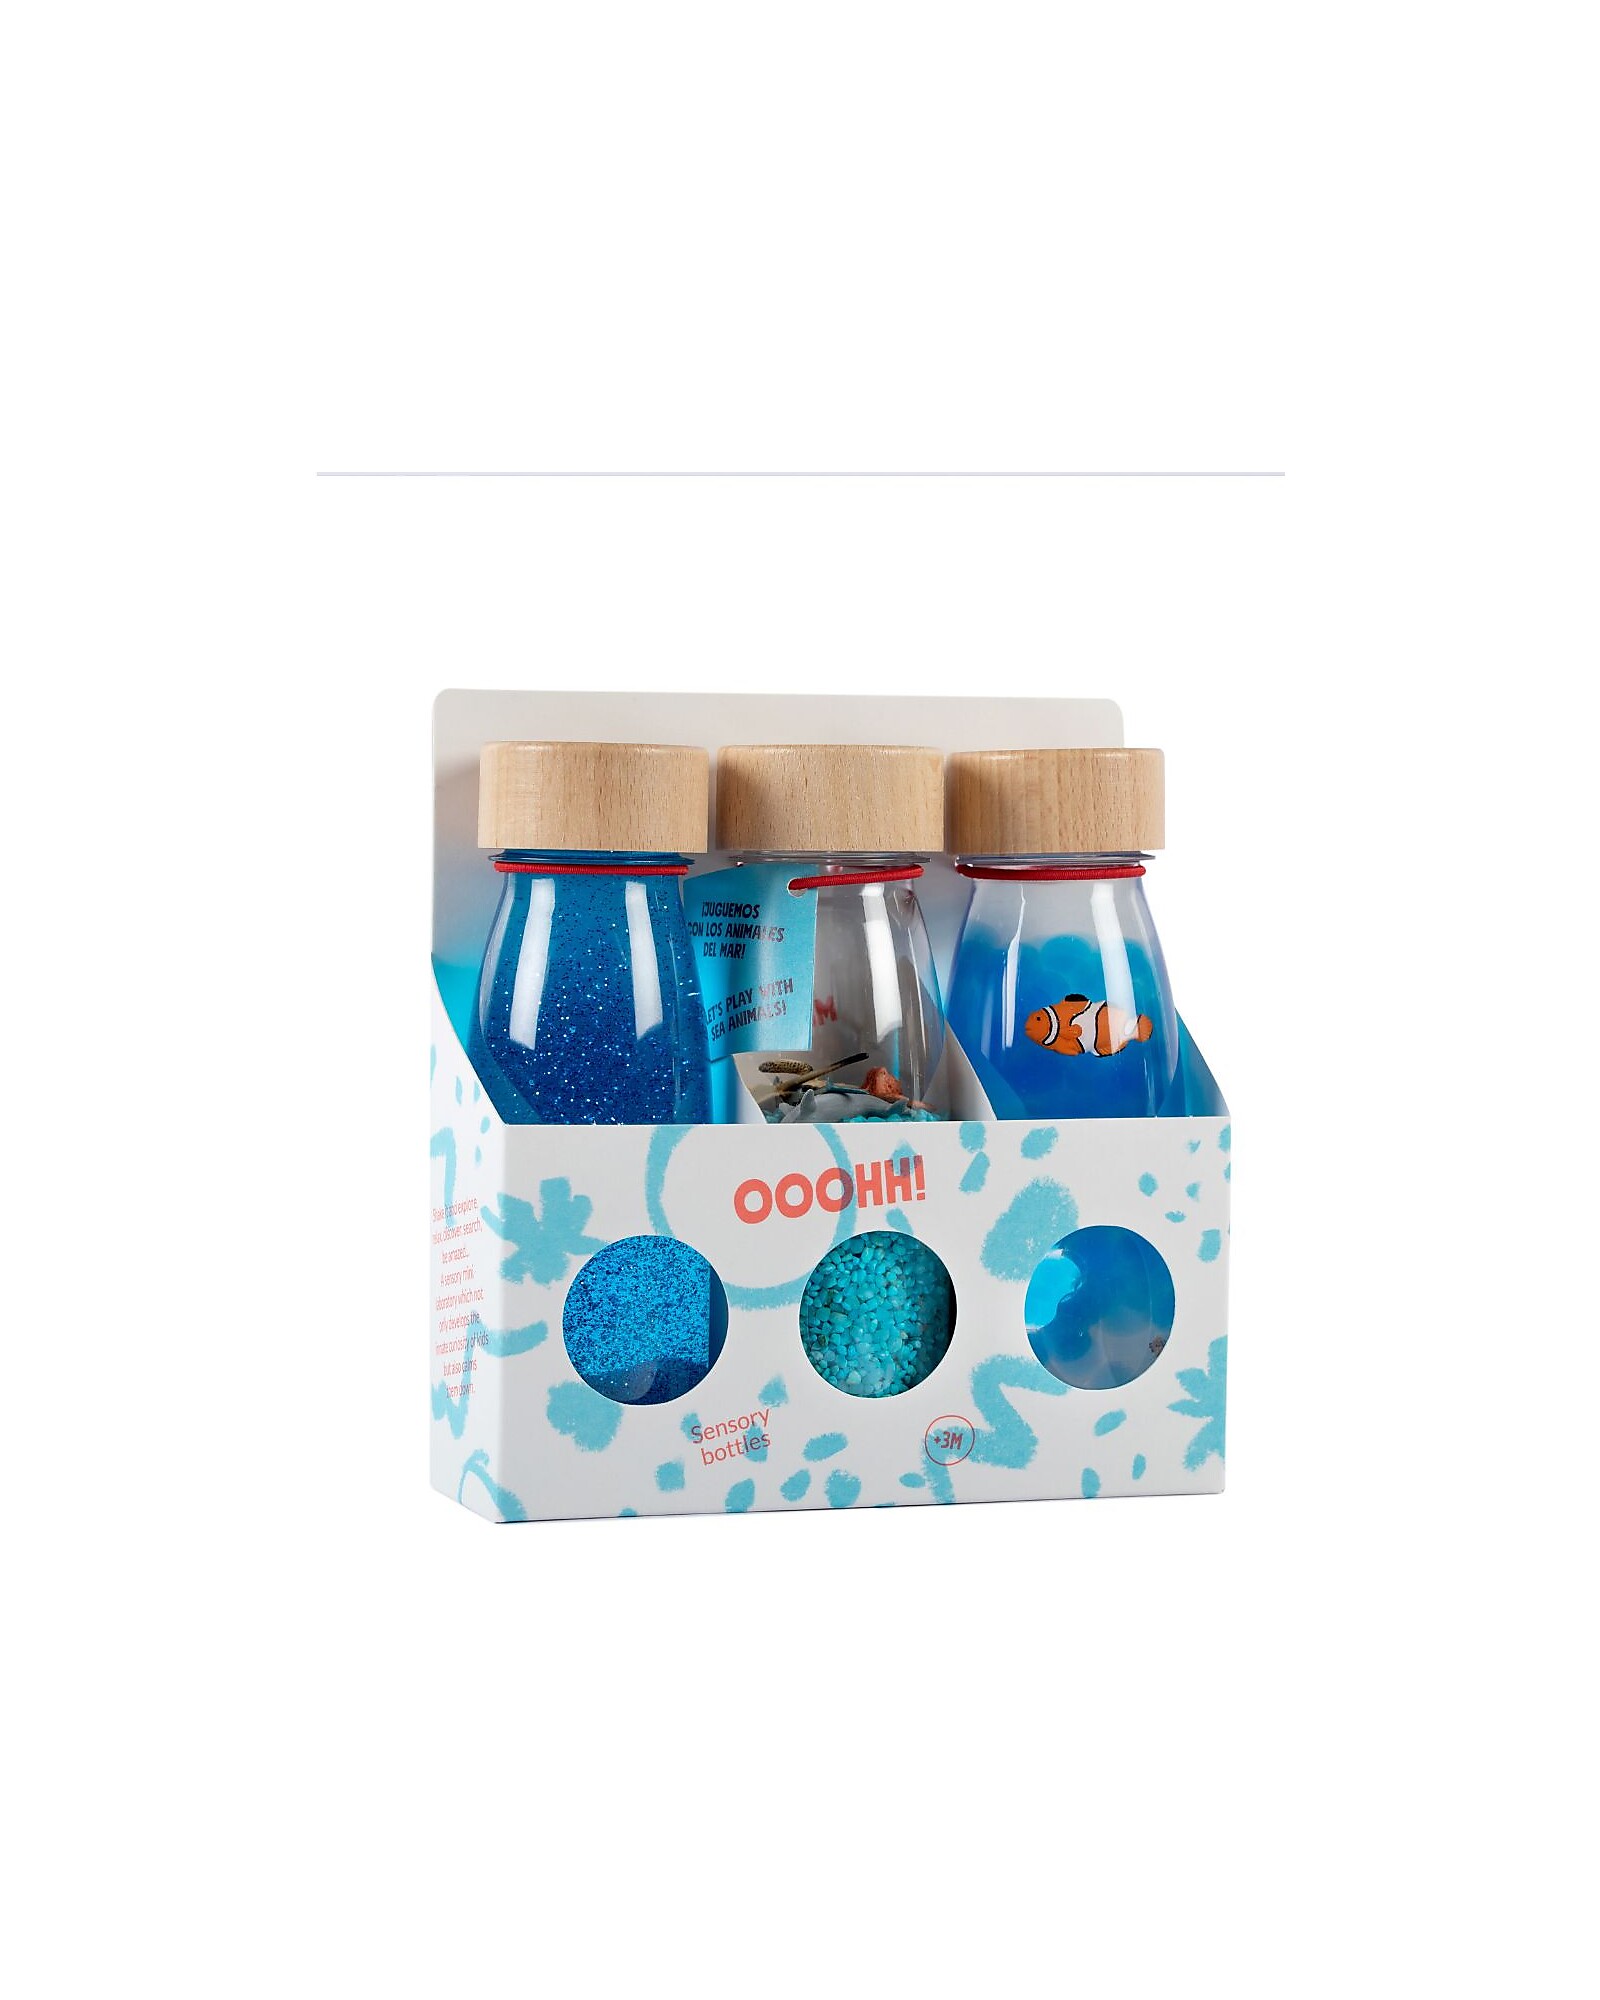 Confezione da 3 bottiglie eco-sensoriali - Petit Boum